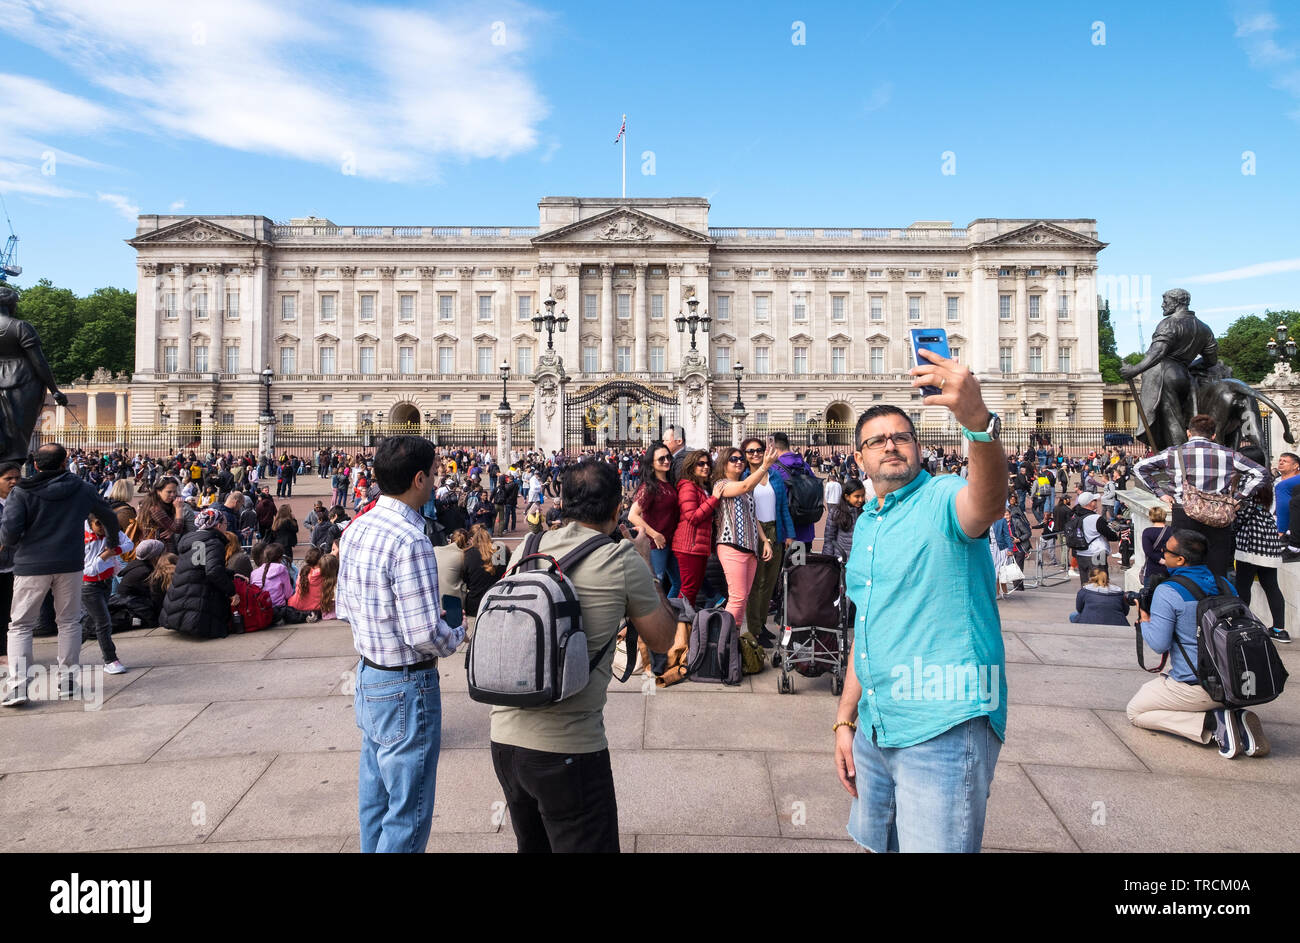 Tourists taking selfies and photographs outside Buckingham Palace, London, England, UK Stock Photo